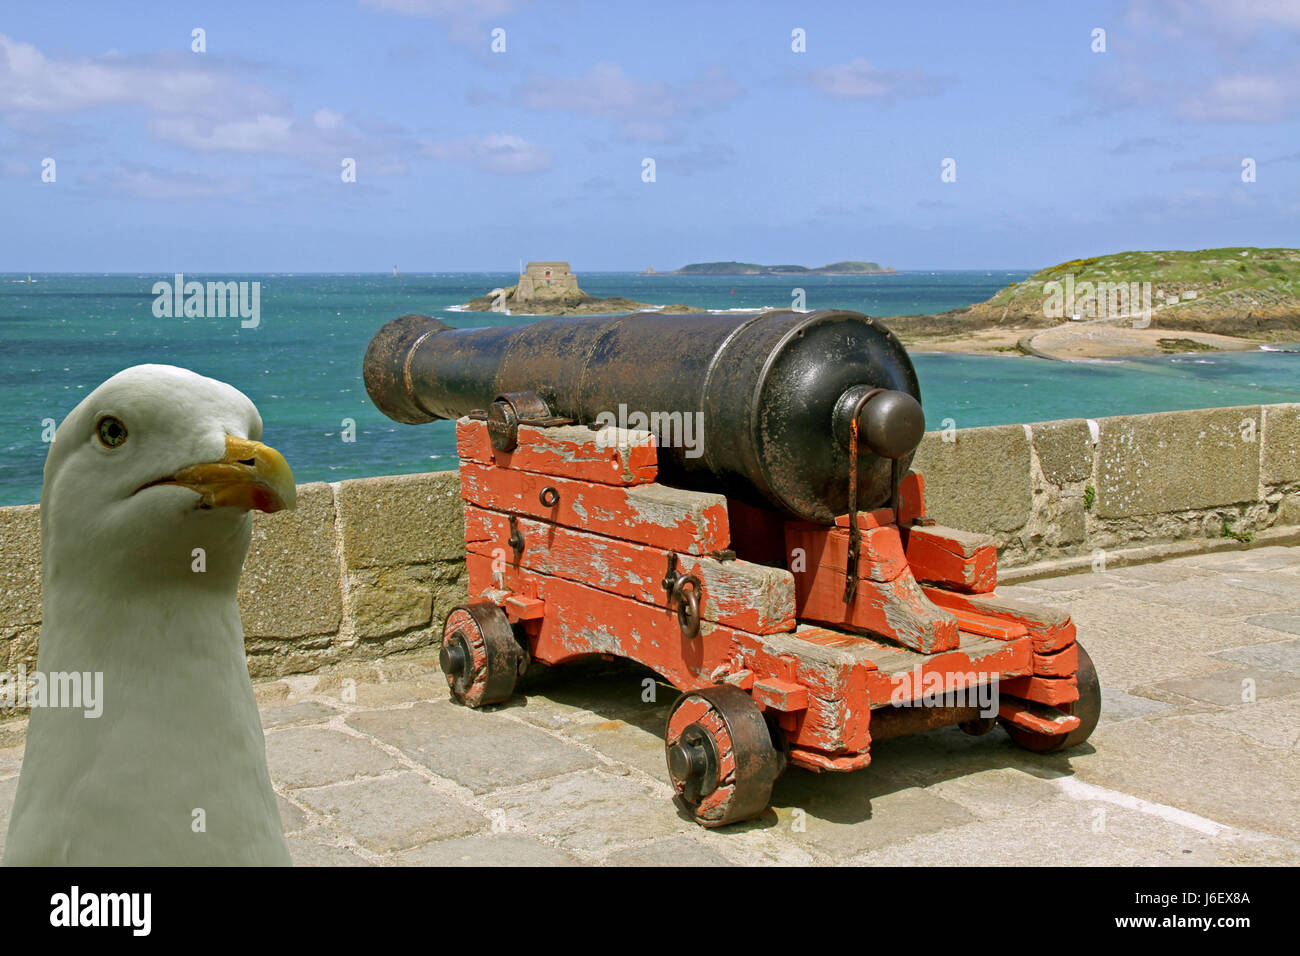 Città fortezza parete brittany cannon pistola difesa seagull gabbiano parete storico Foto Stock